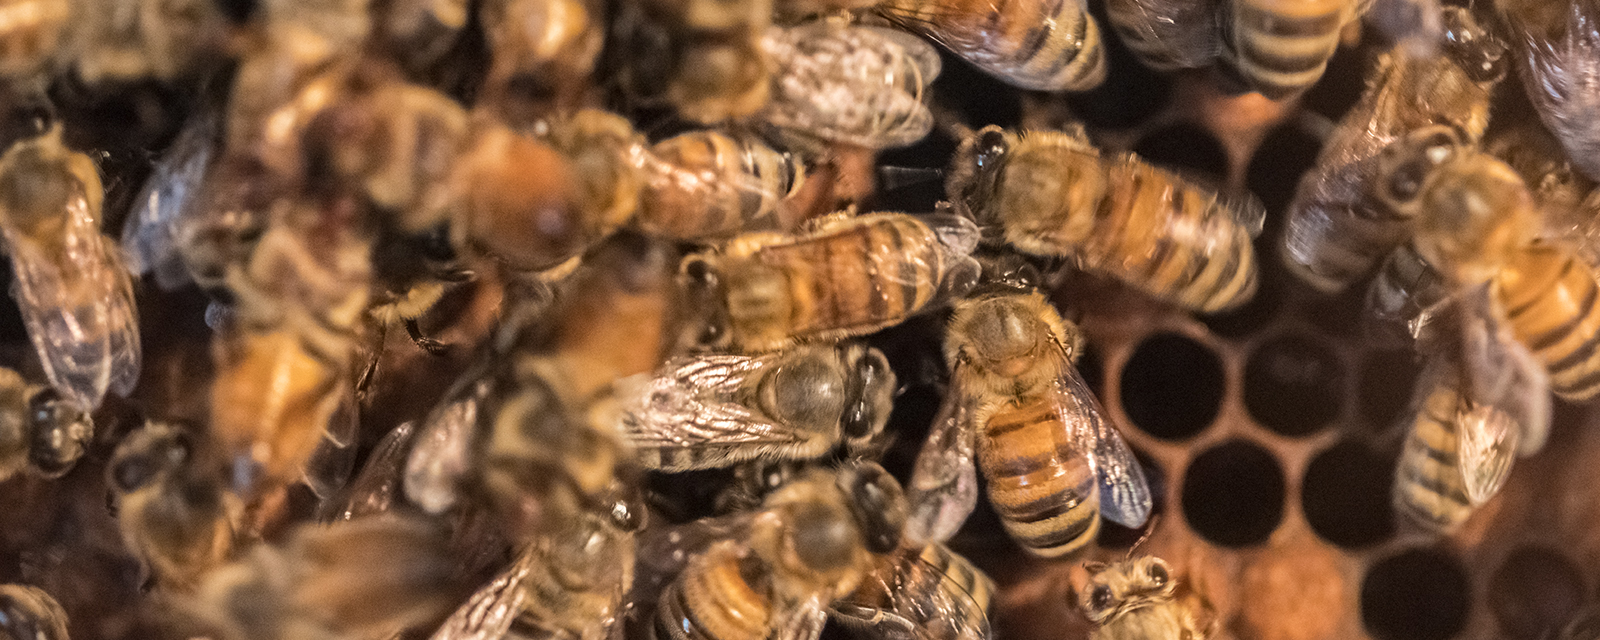 European honey bee in exhibit